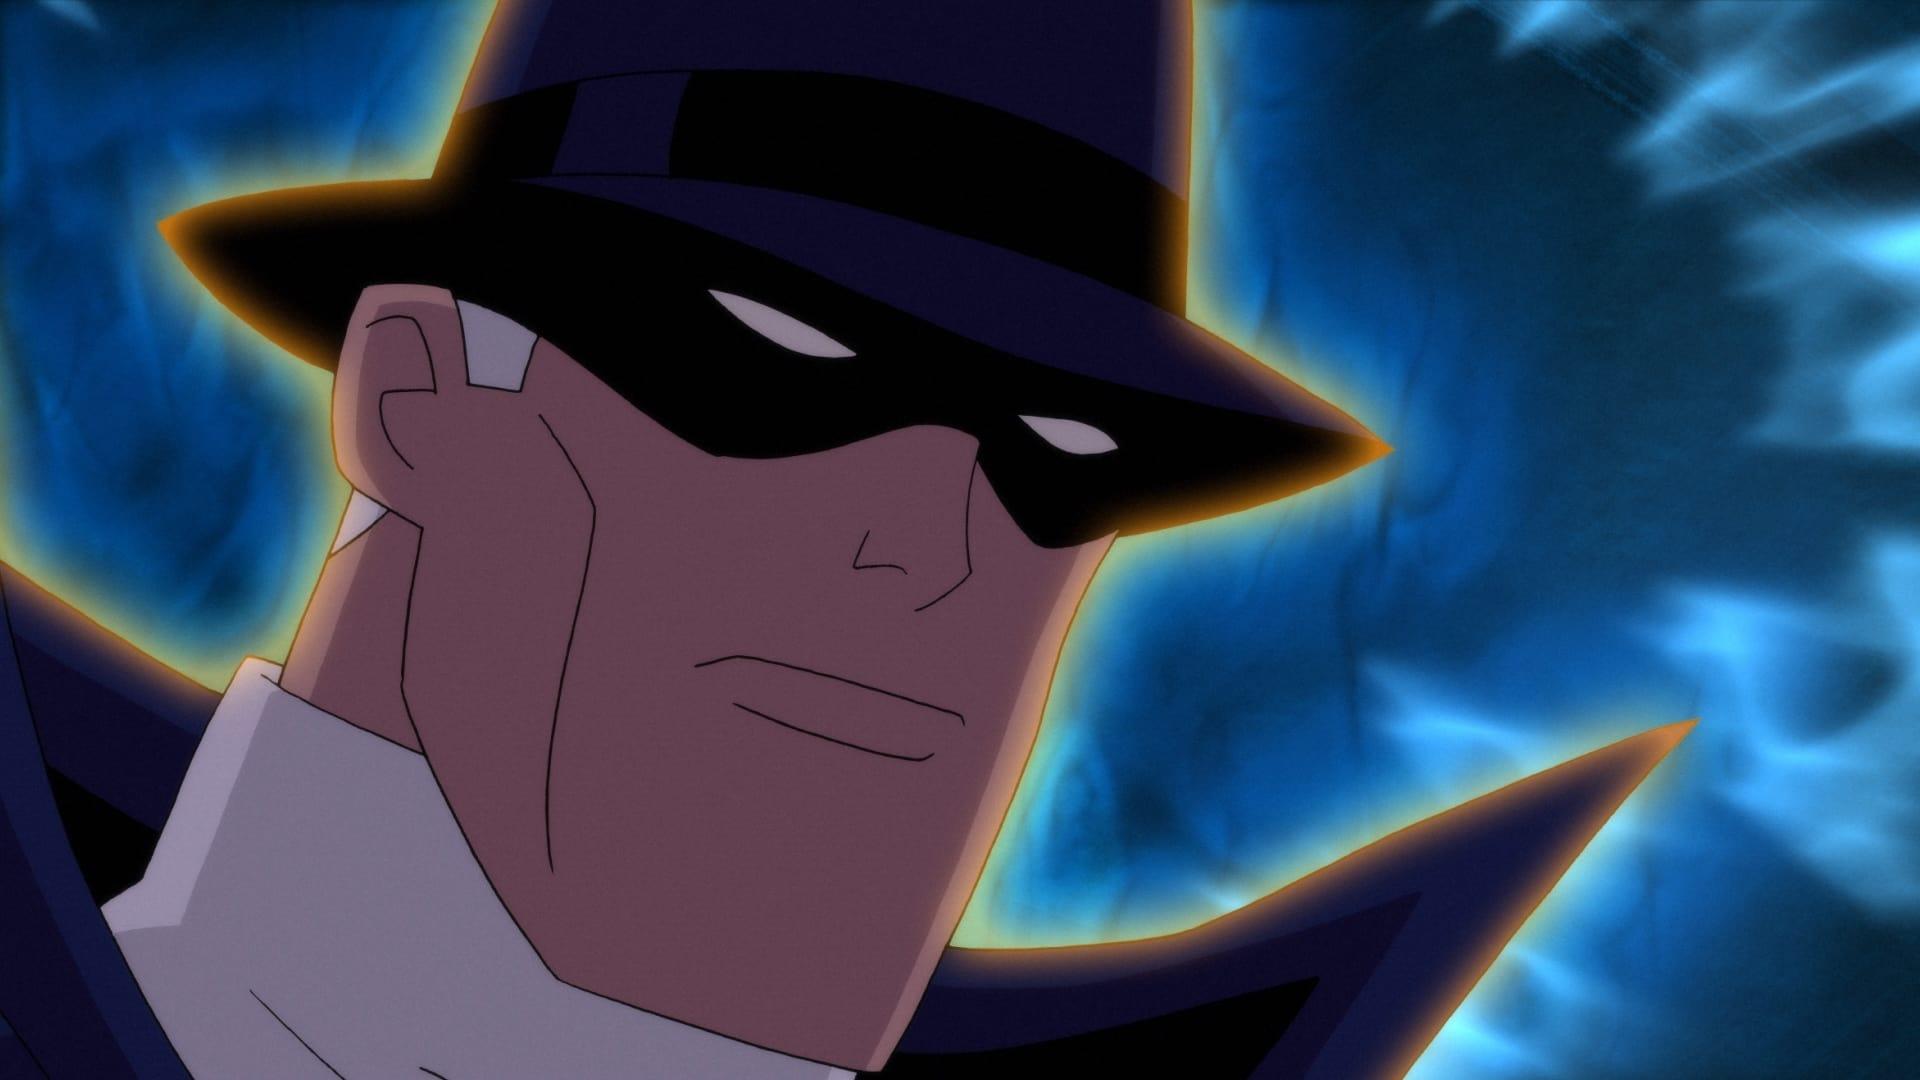 DC Showcase: The Phantom Stranger backdrop